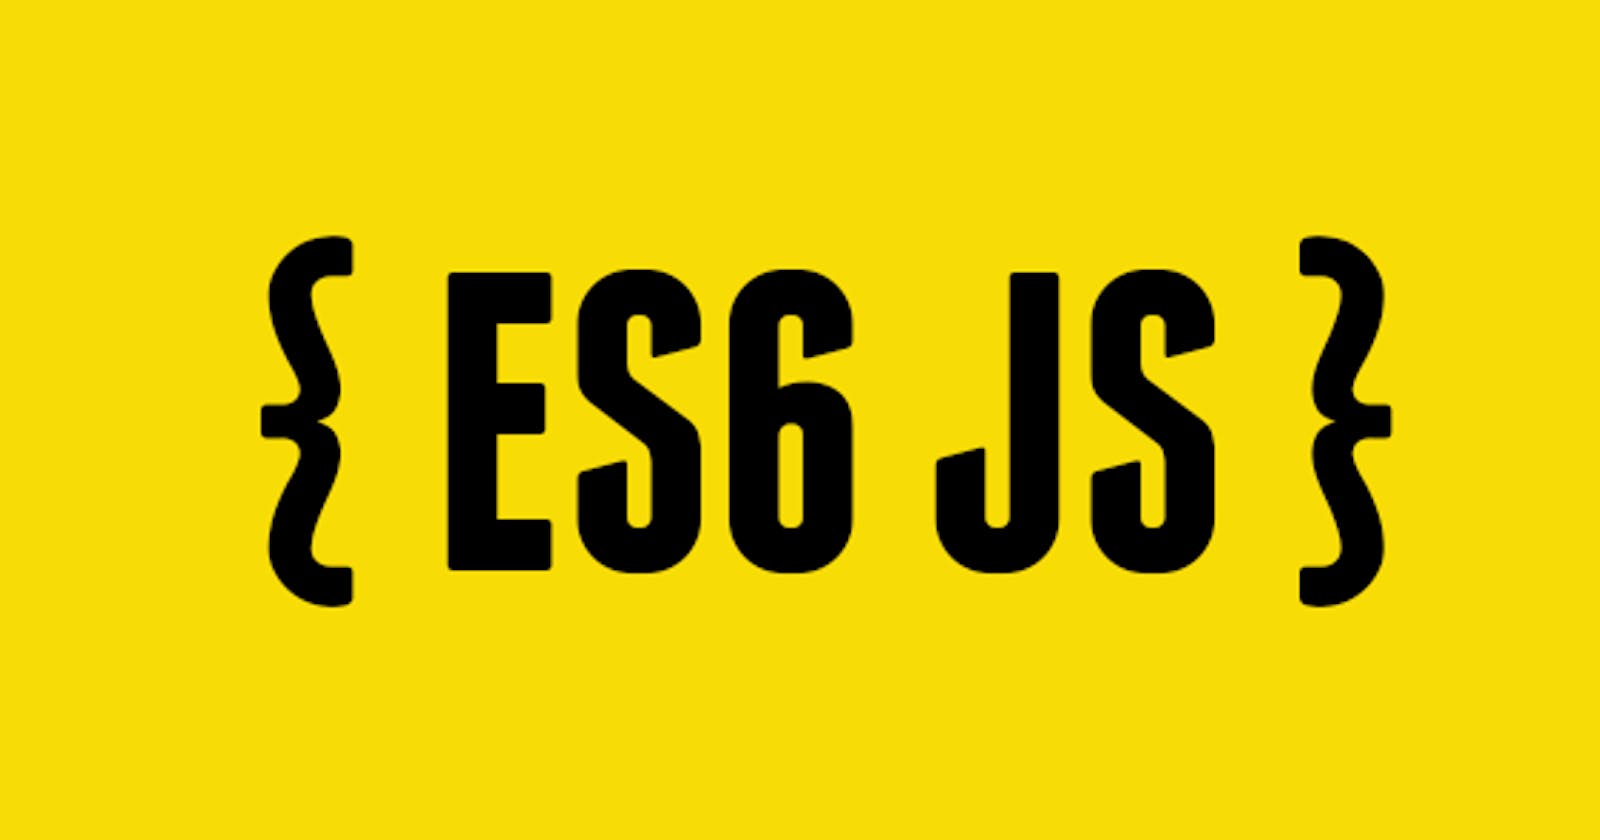 ES6 Features...